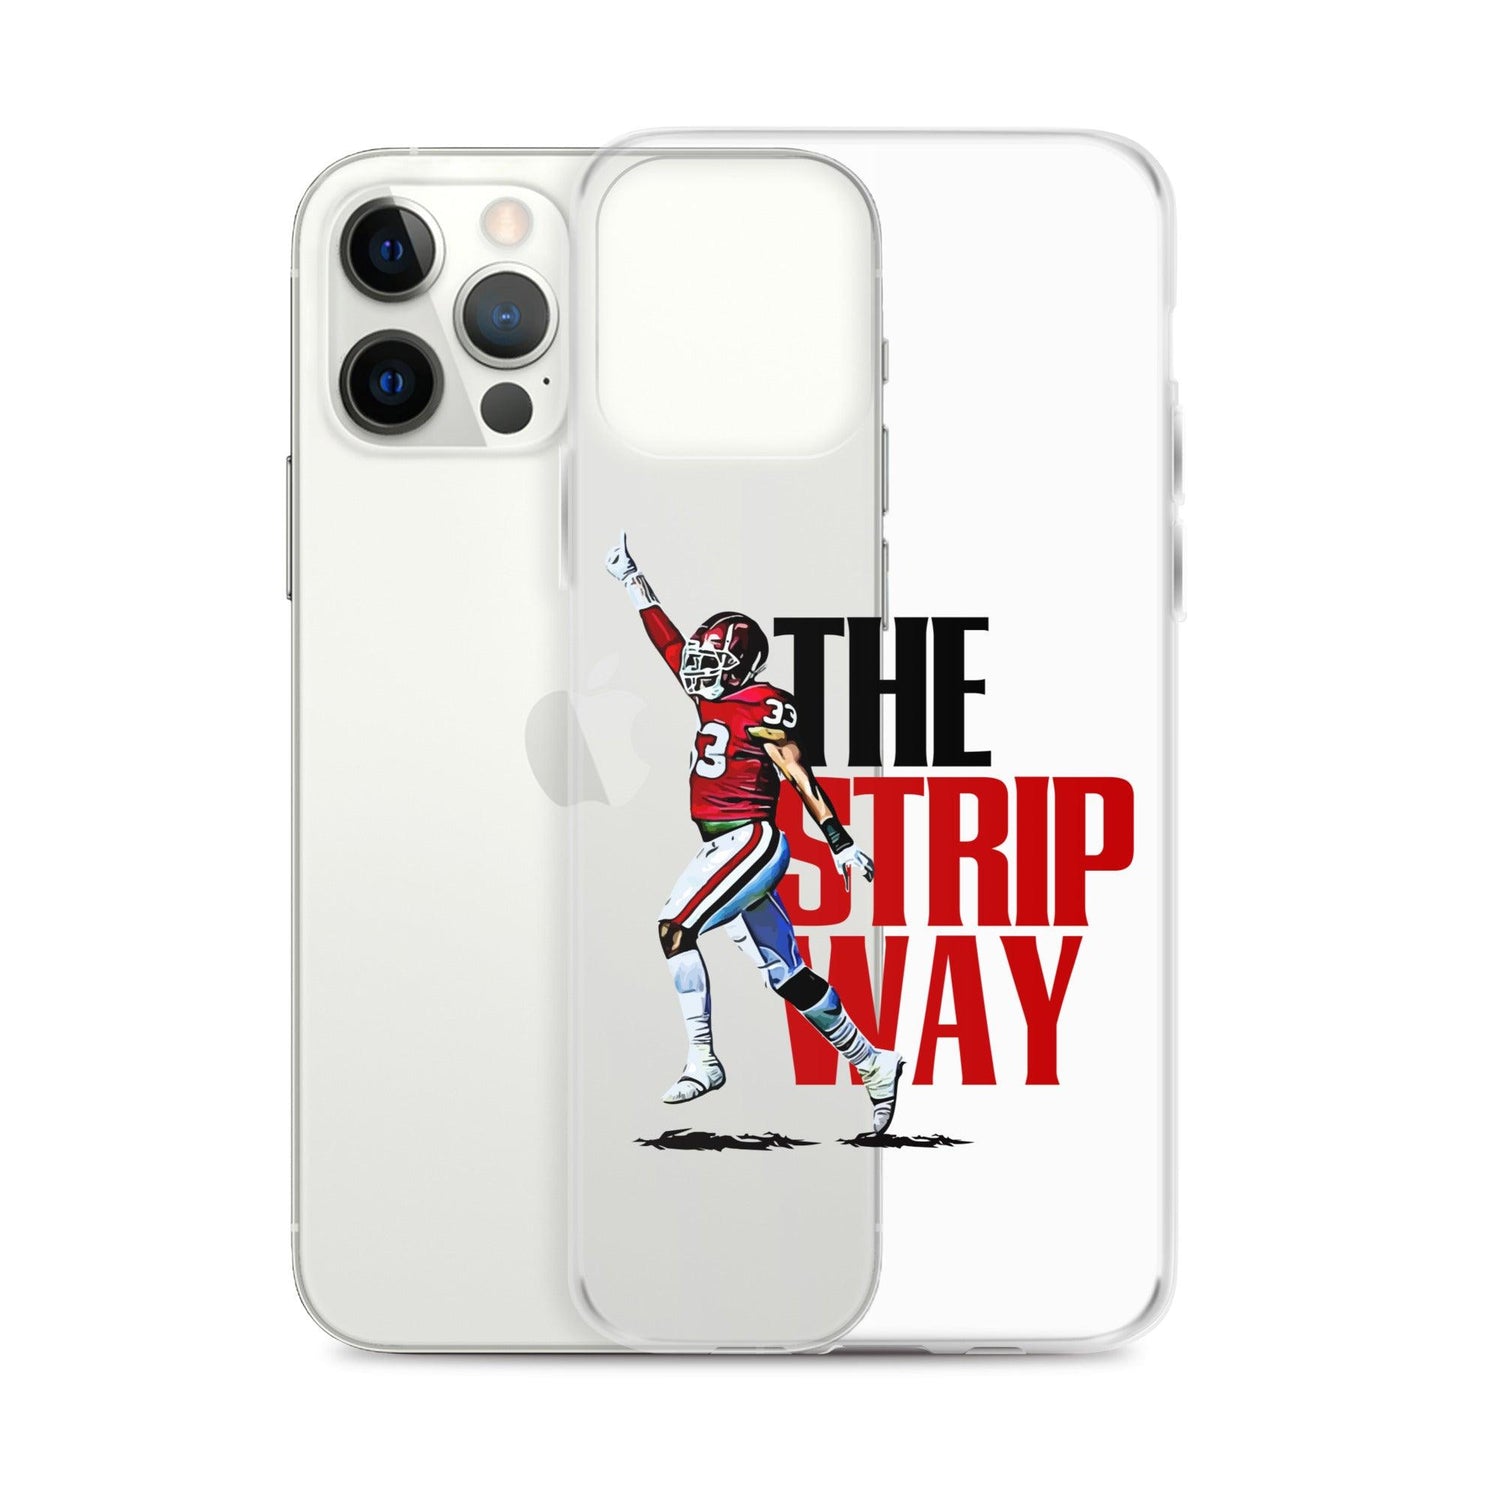 Marcus Stripling “TSW” iPhone Case - Fan Arch